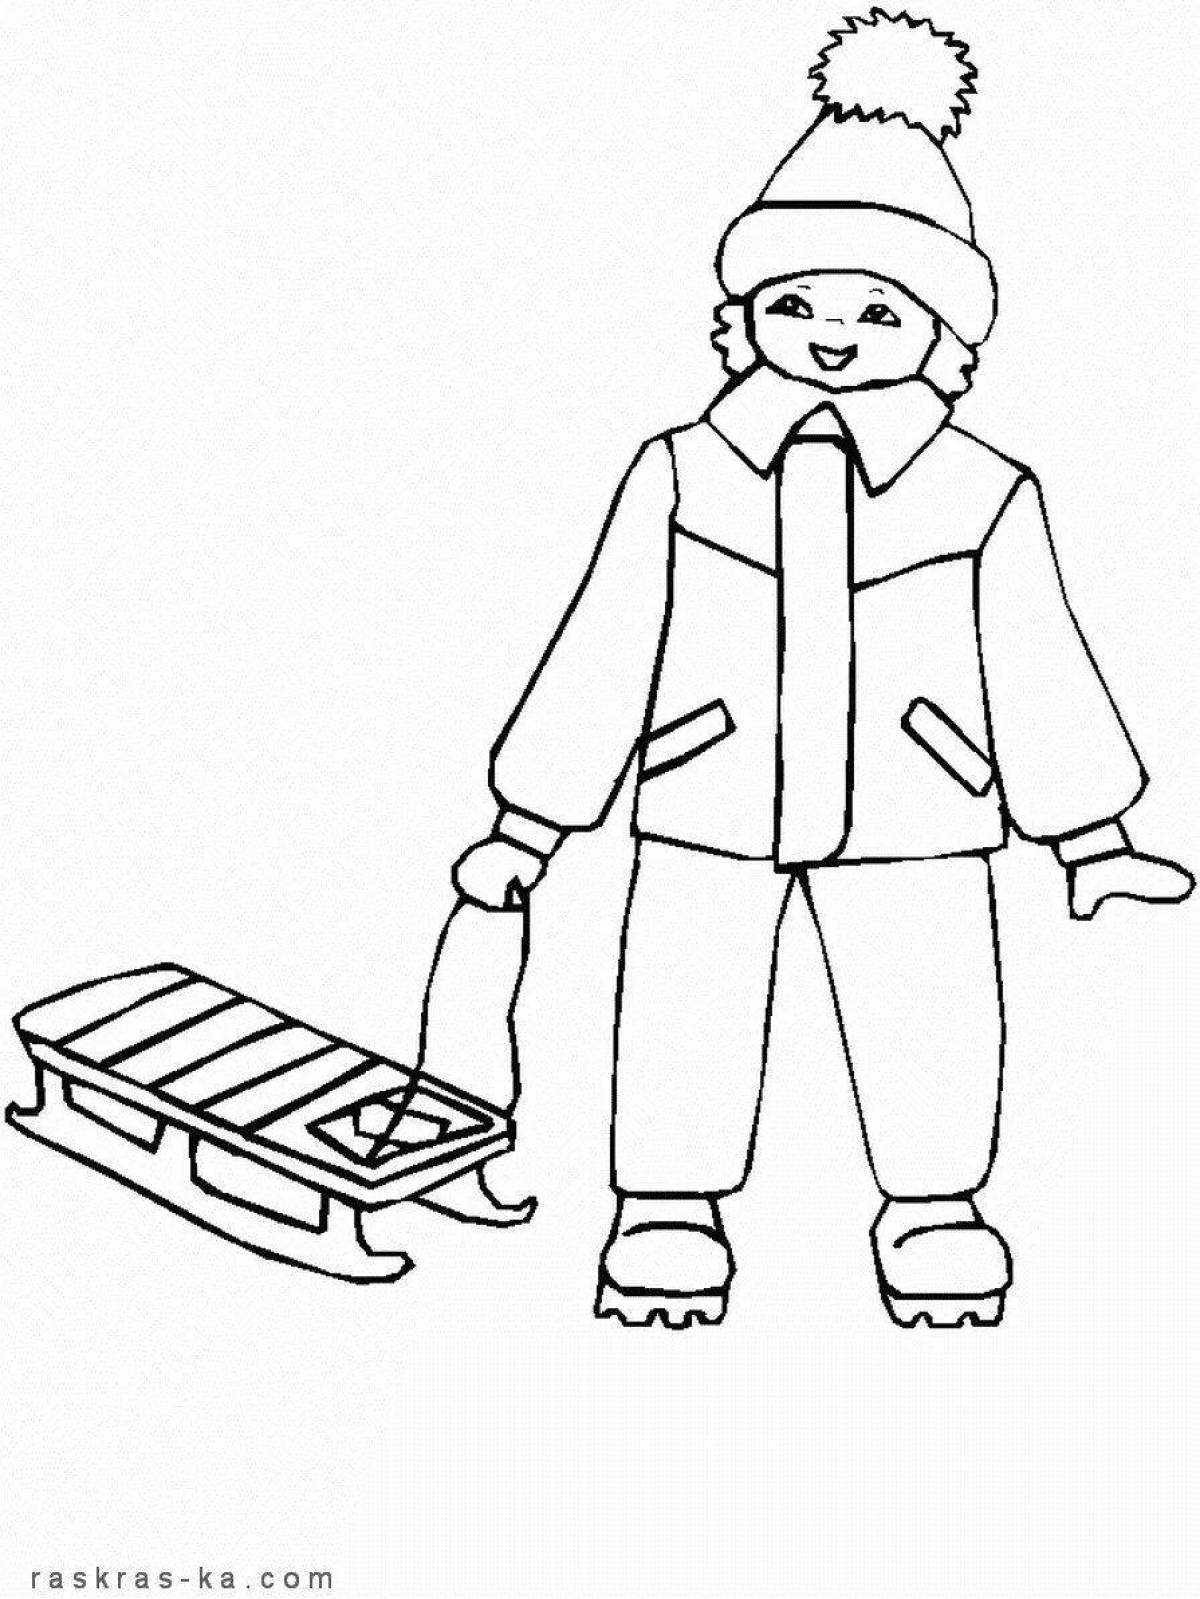 Смешная раскраска зимней одежды для детей 6-7 лет